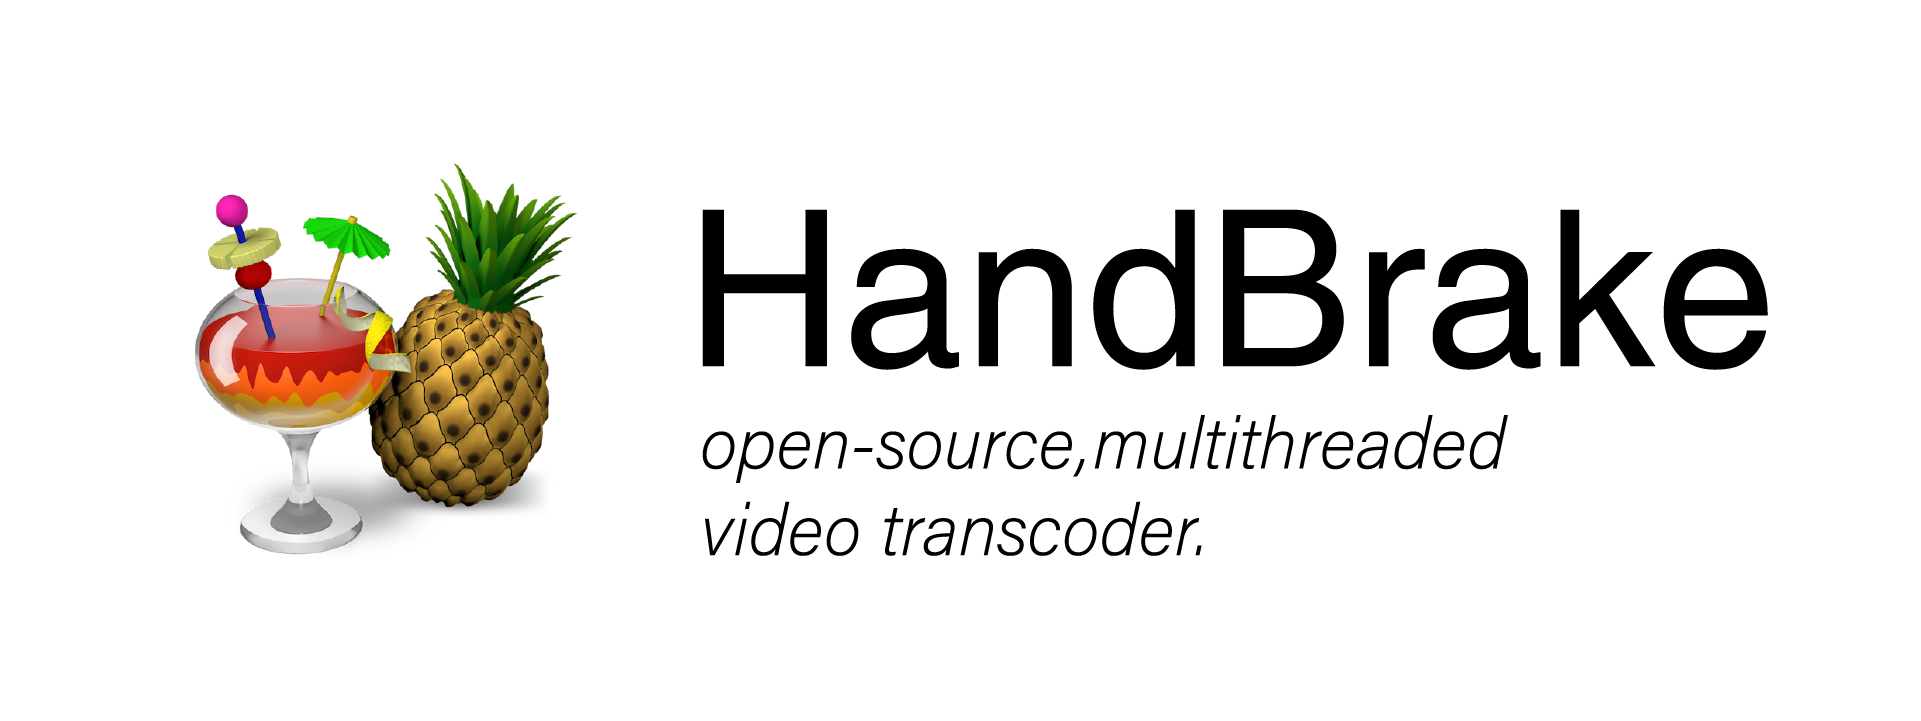 Handbrake：一个开源的视频压缩软件